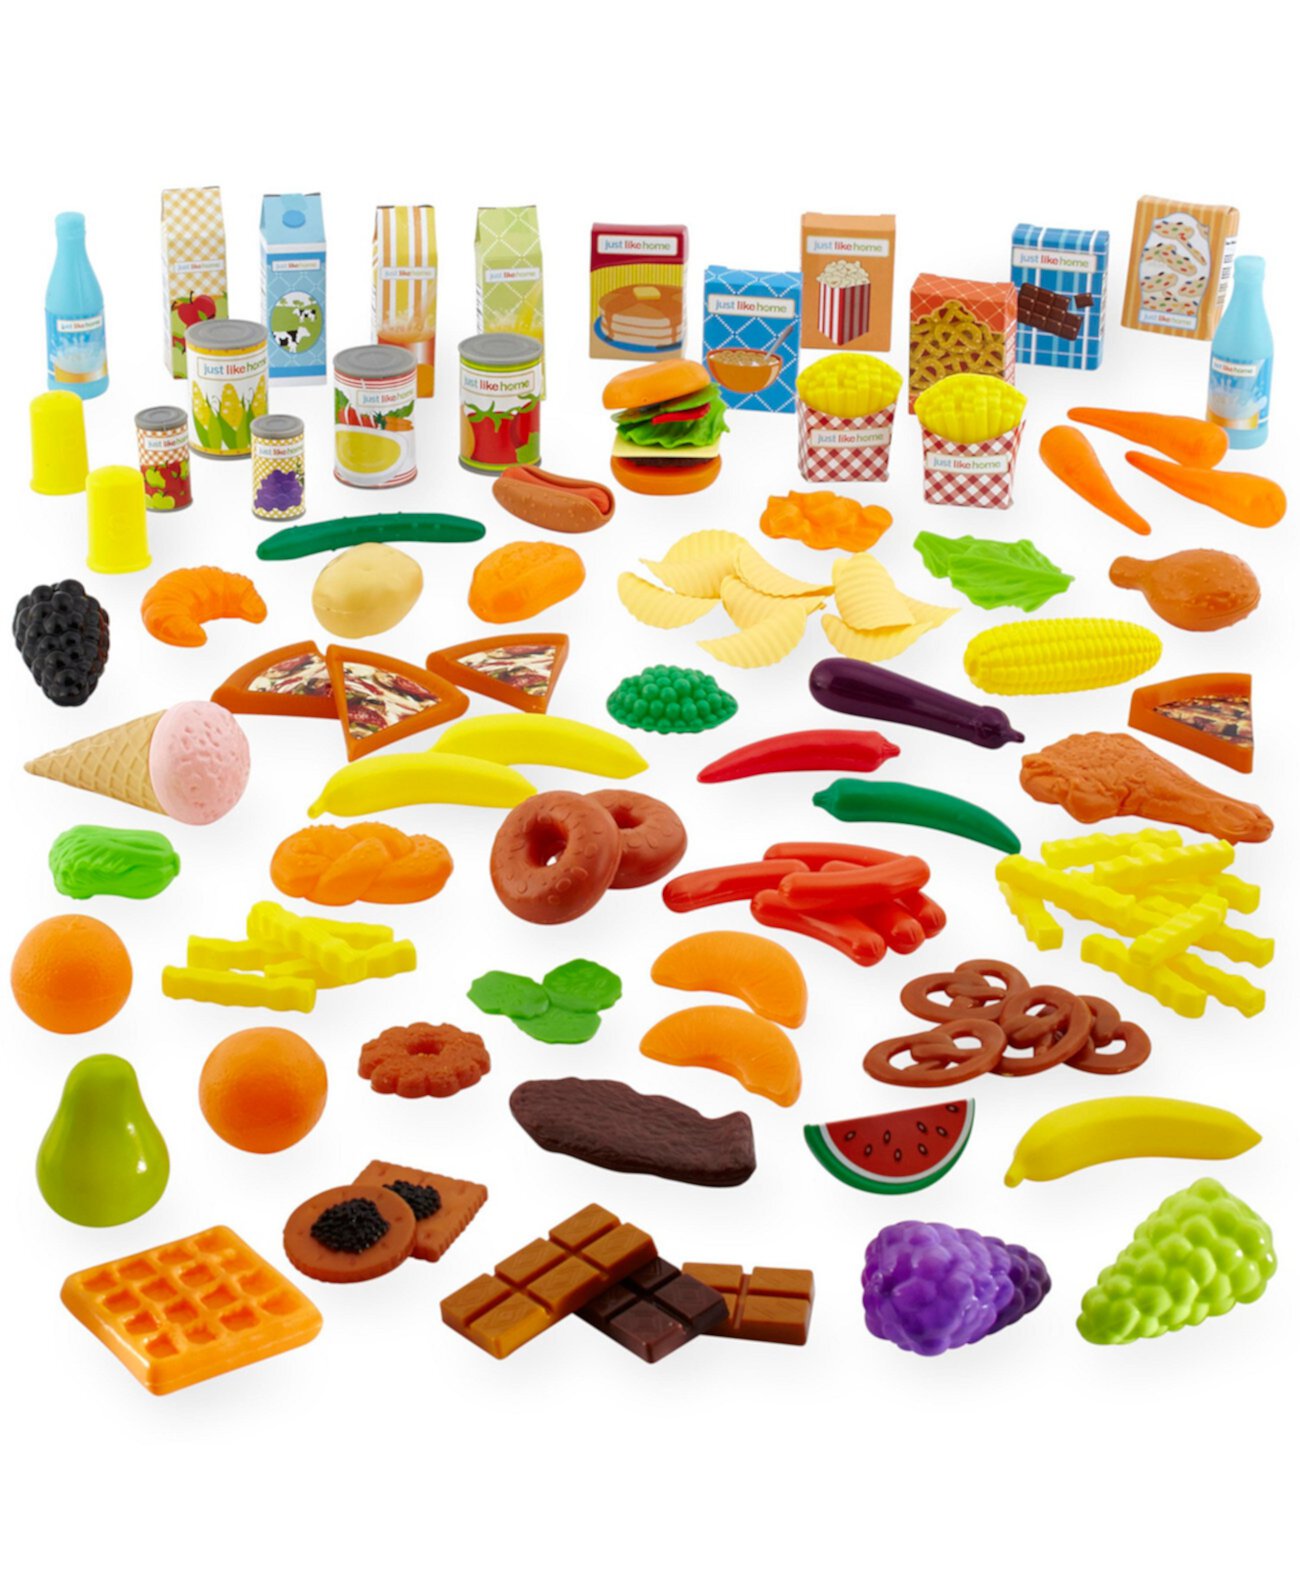 Роскошный набор еды Play, созданный для вас компанией Toys R Us Just Like Home